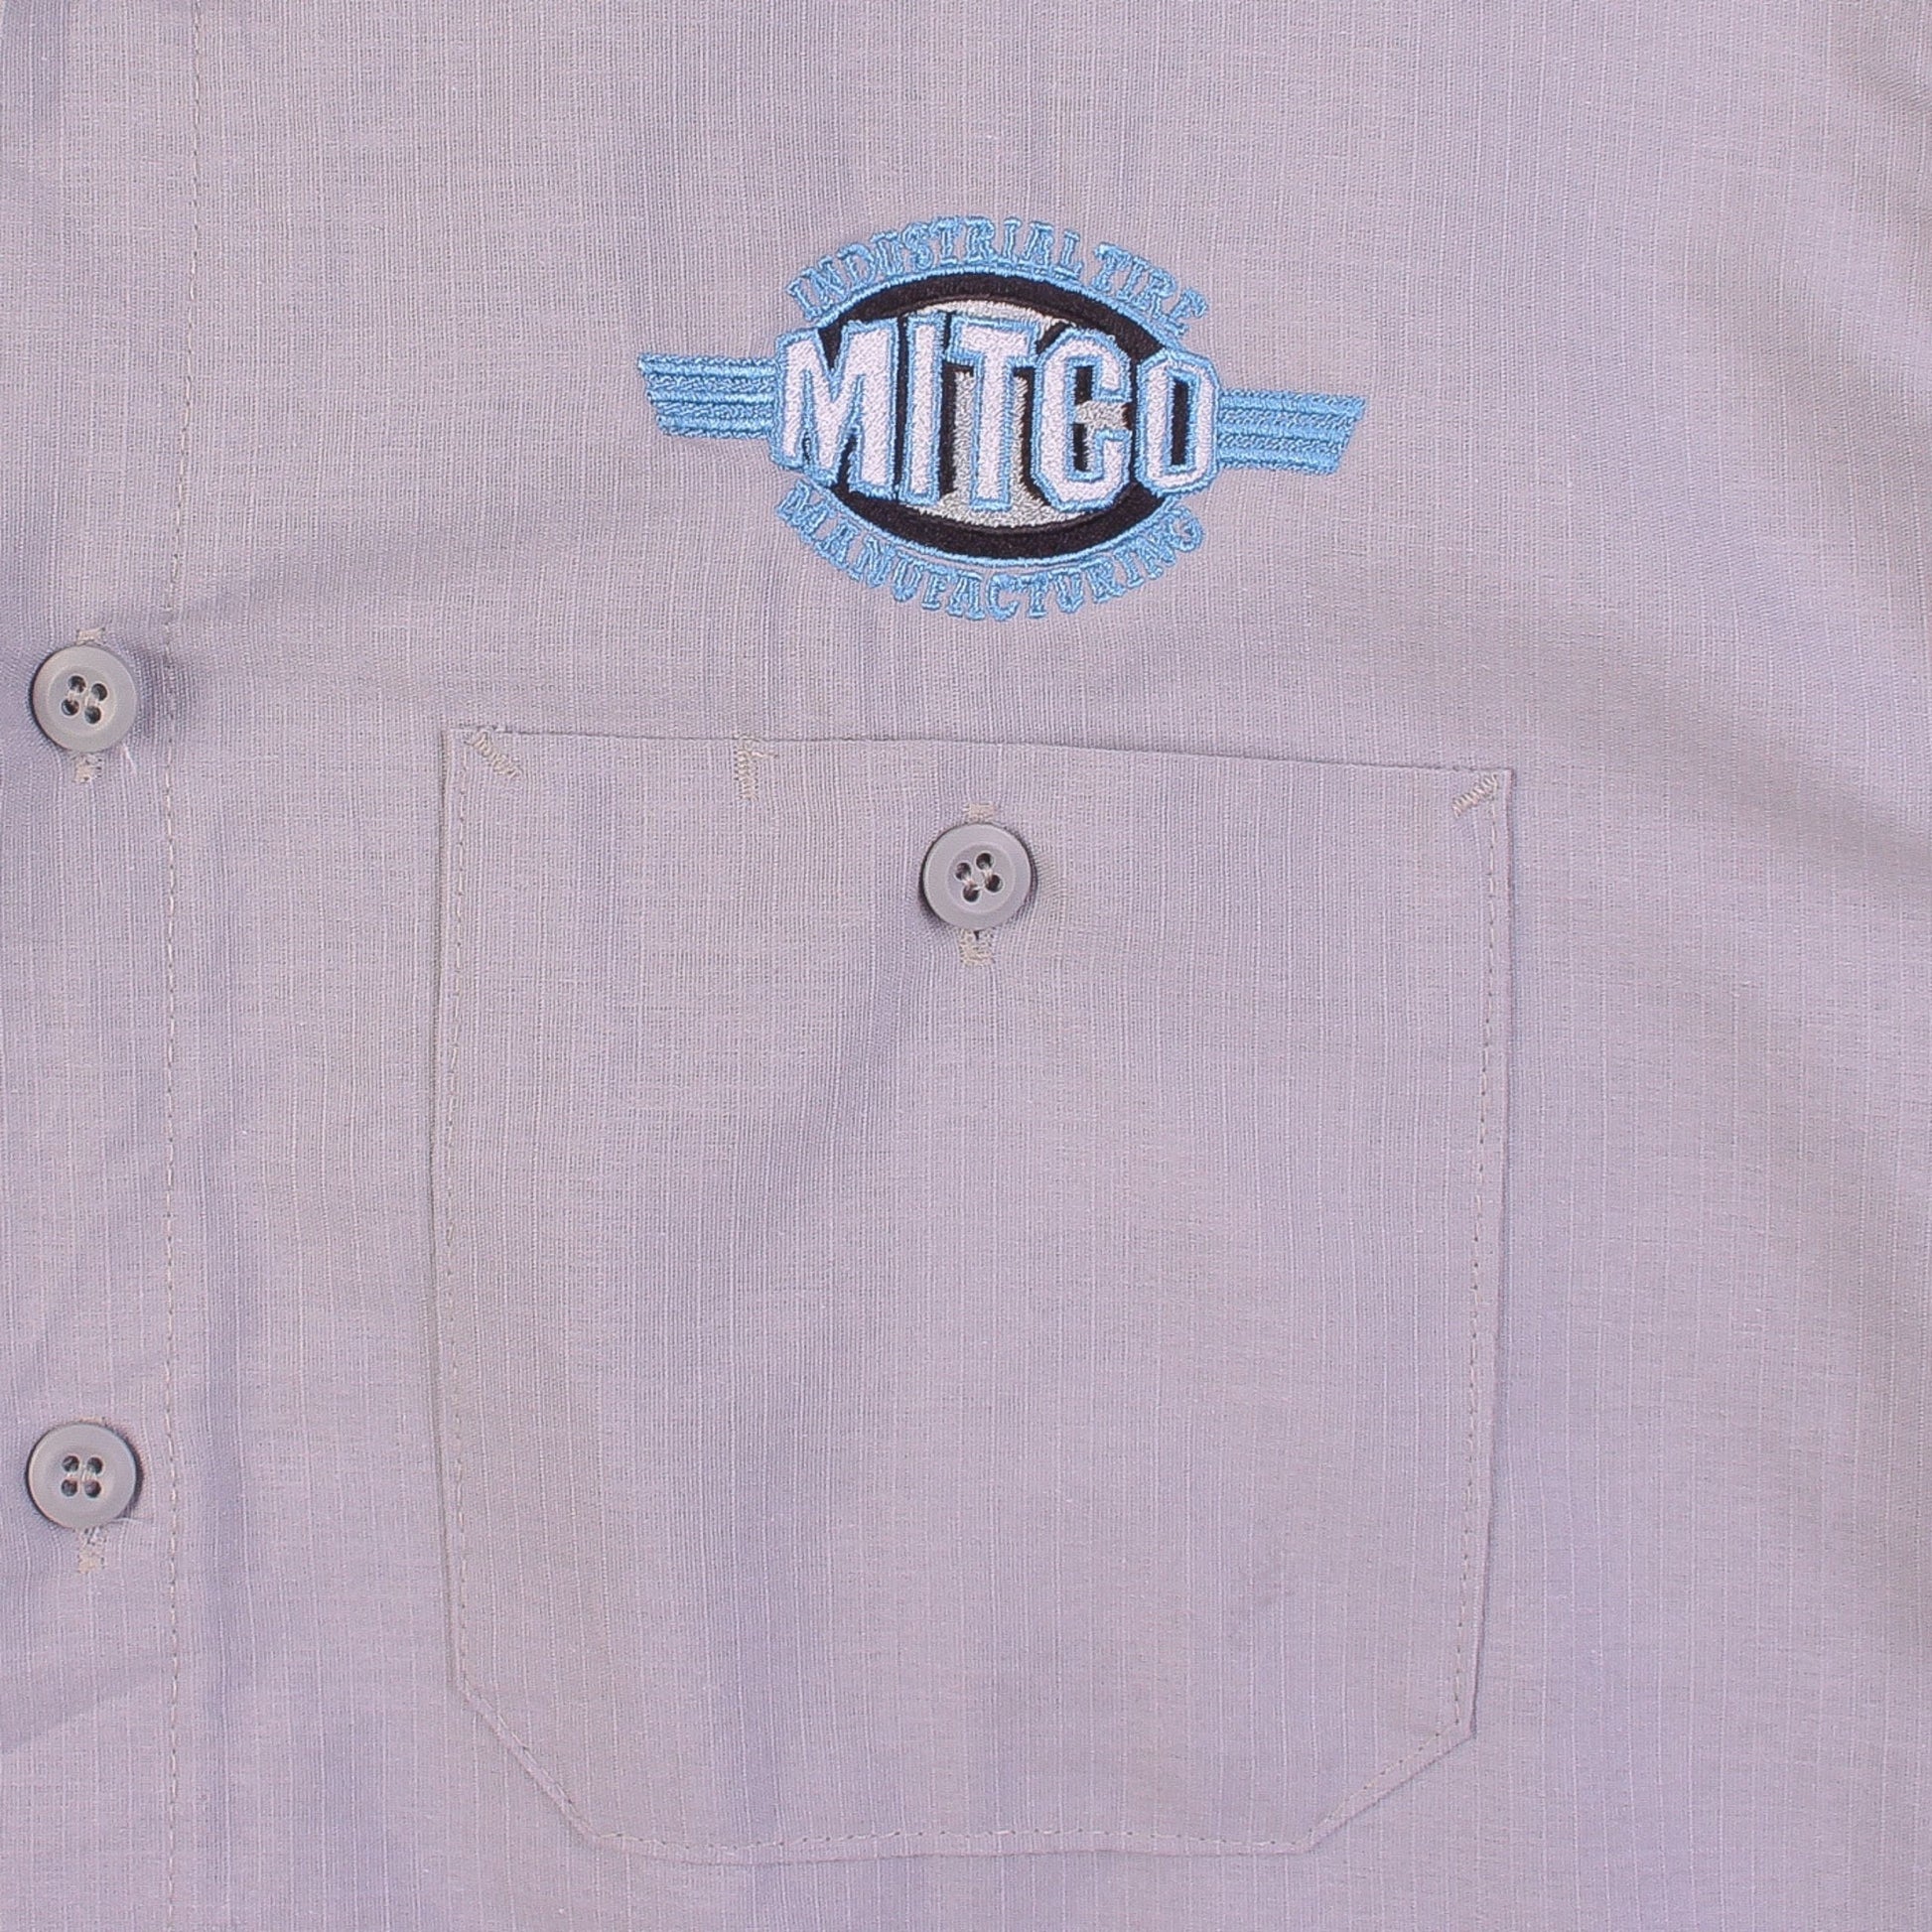 'MitCo' Garage Work Shirt - American Madness